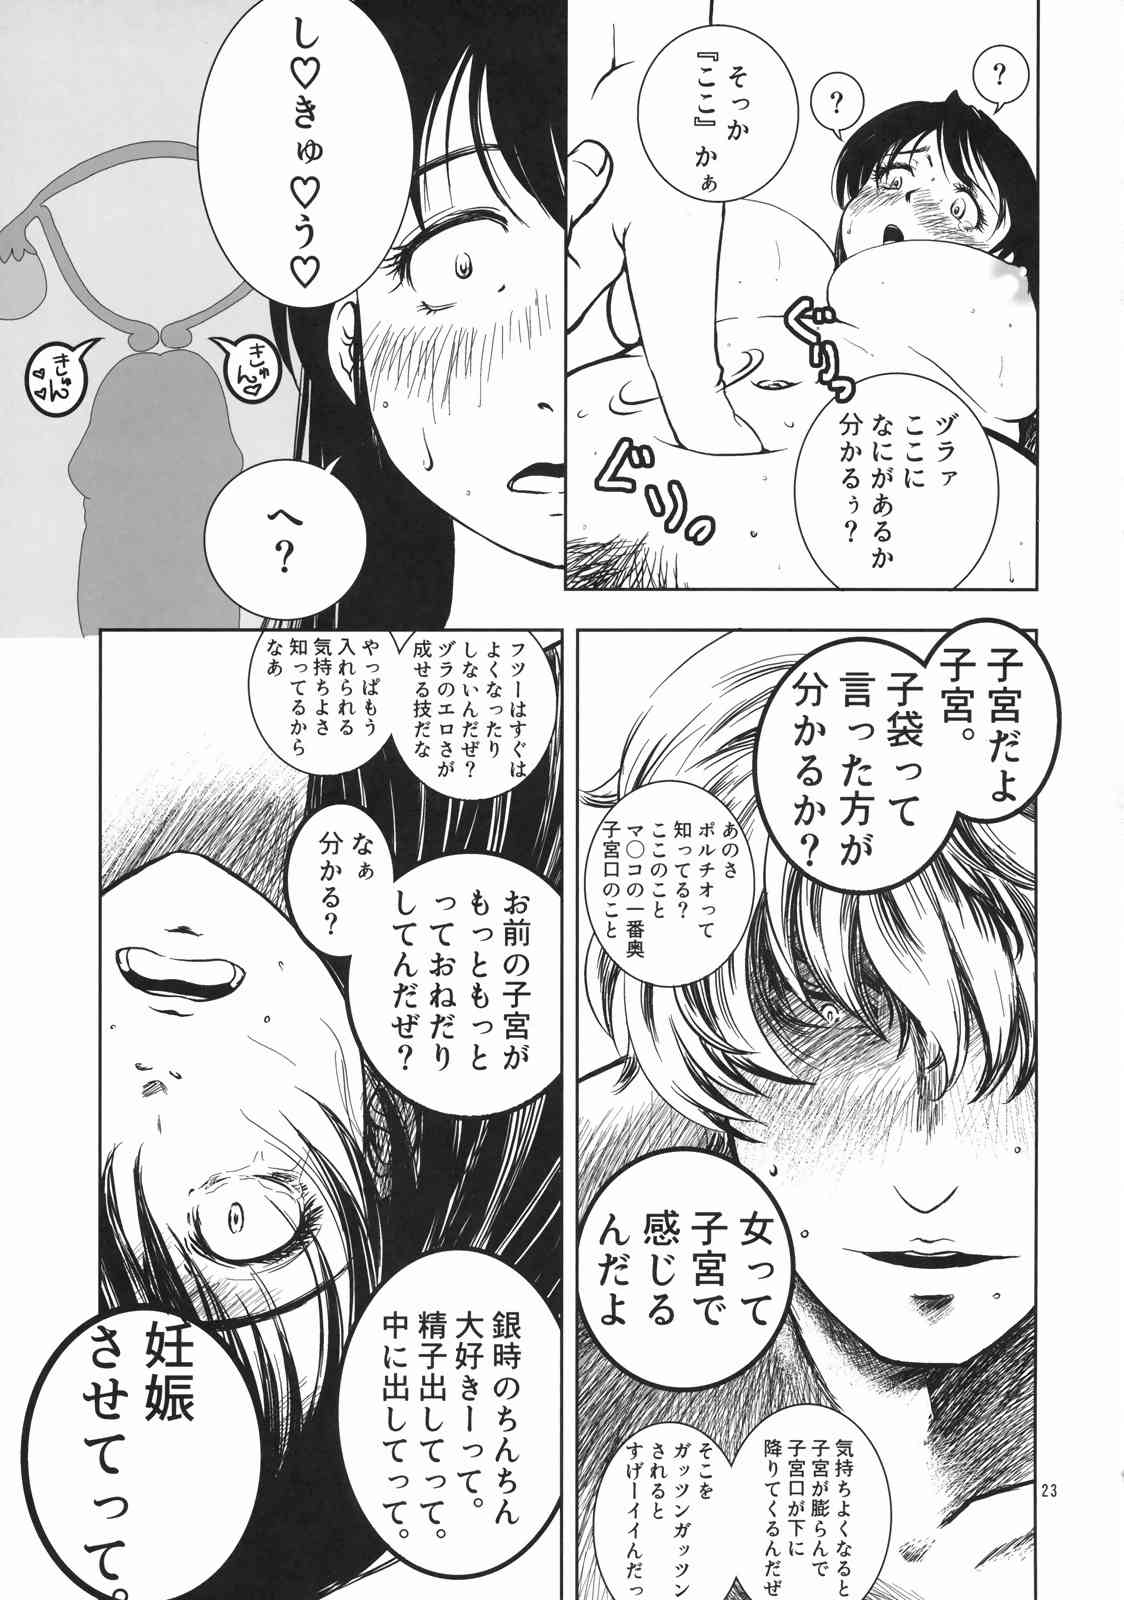 【銀魂】女体化桂と銀さんの初体験イチャラブセックス♡の画像22枚目